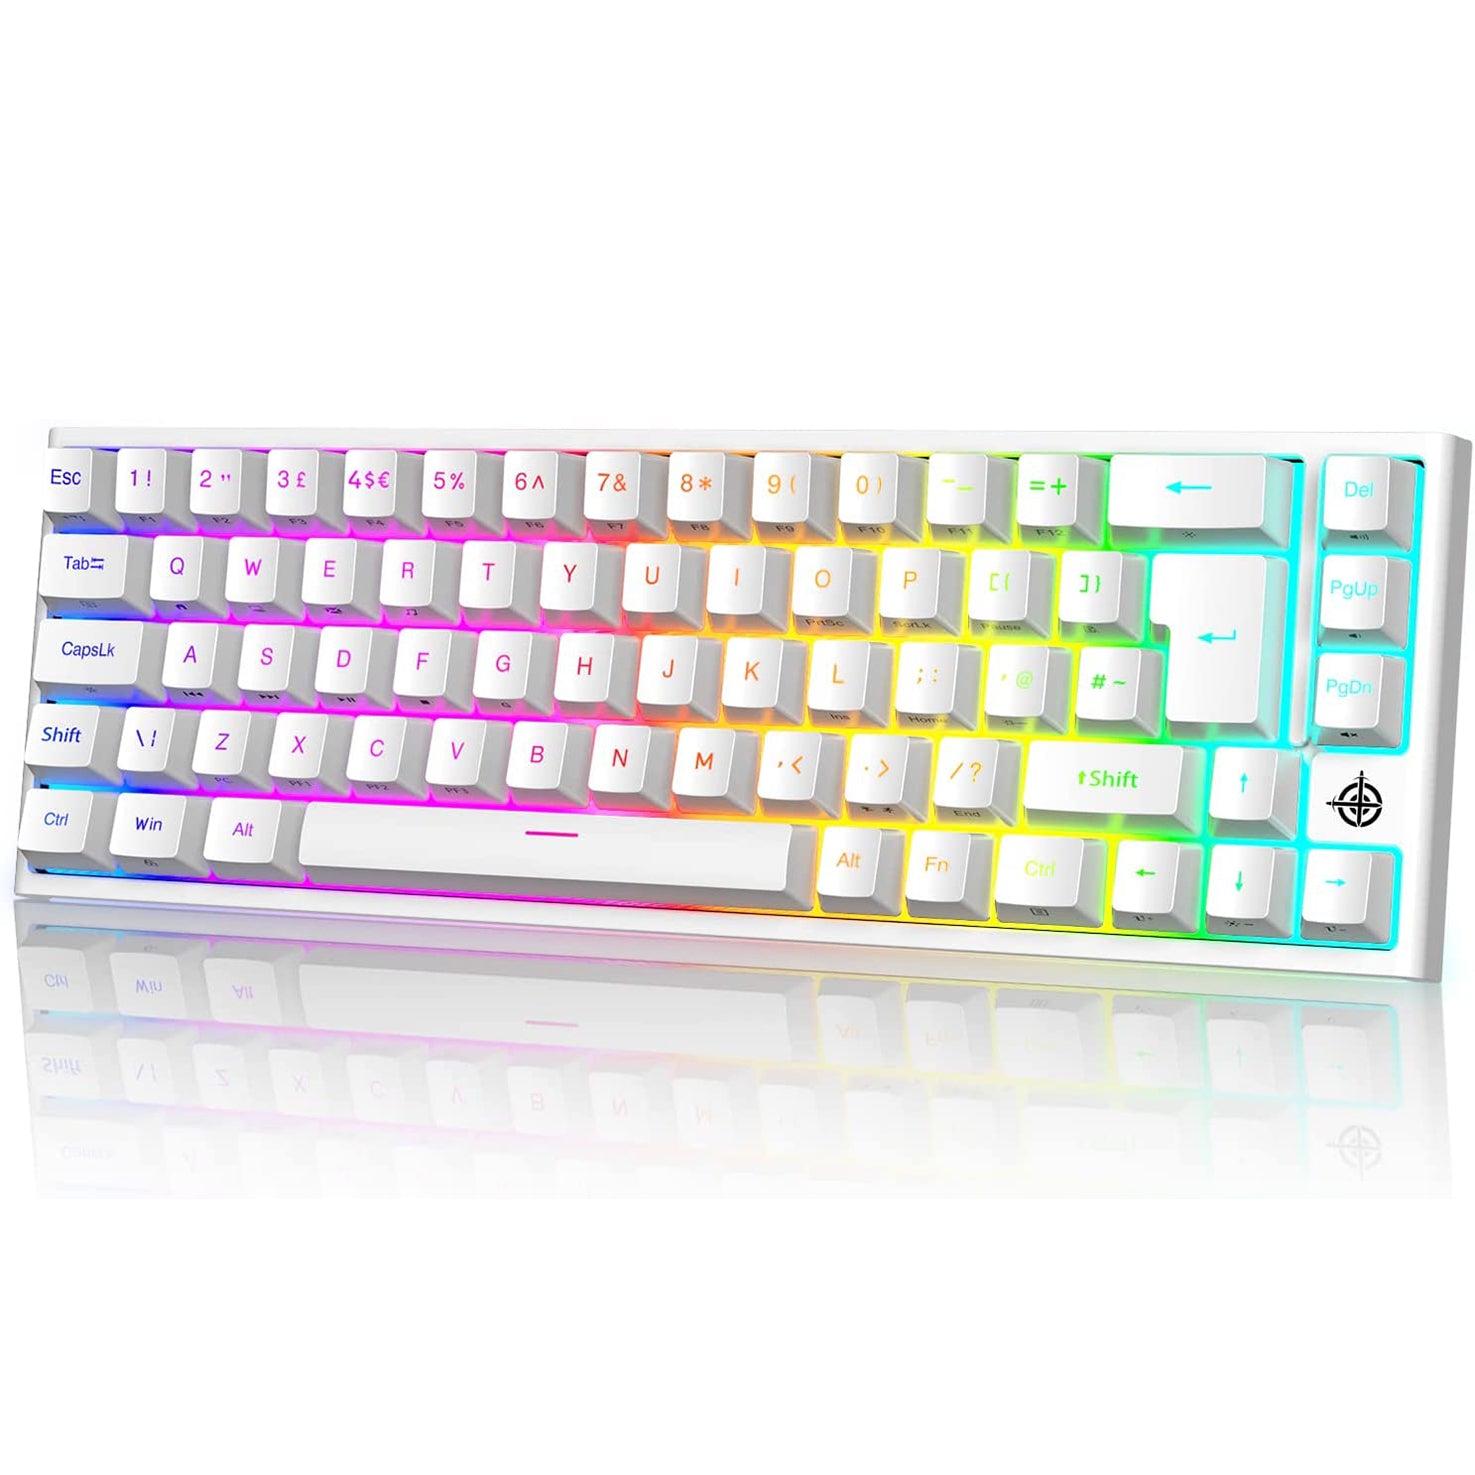 Sømil Kritisk Drikke sig fuld MAGIC-REFINER MK26 60% Gaming Keyboard,RGB Chroma Backlit Wried Ultra-